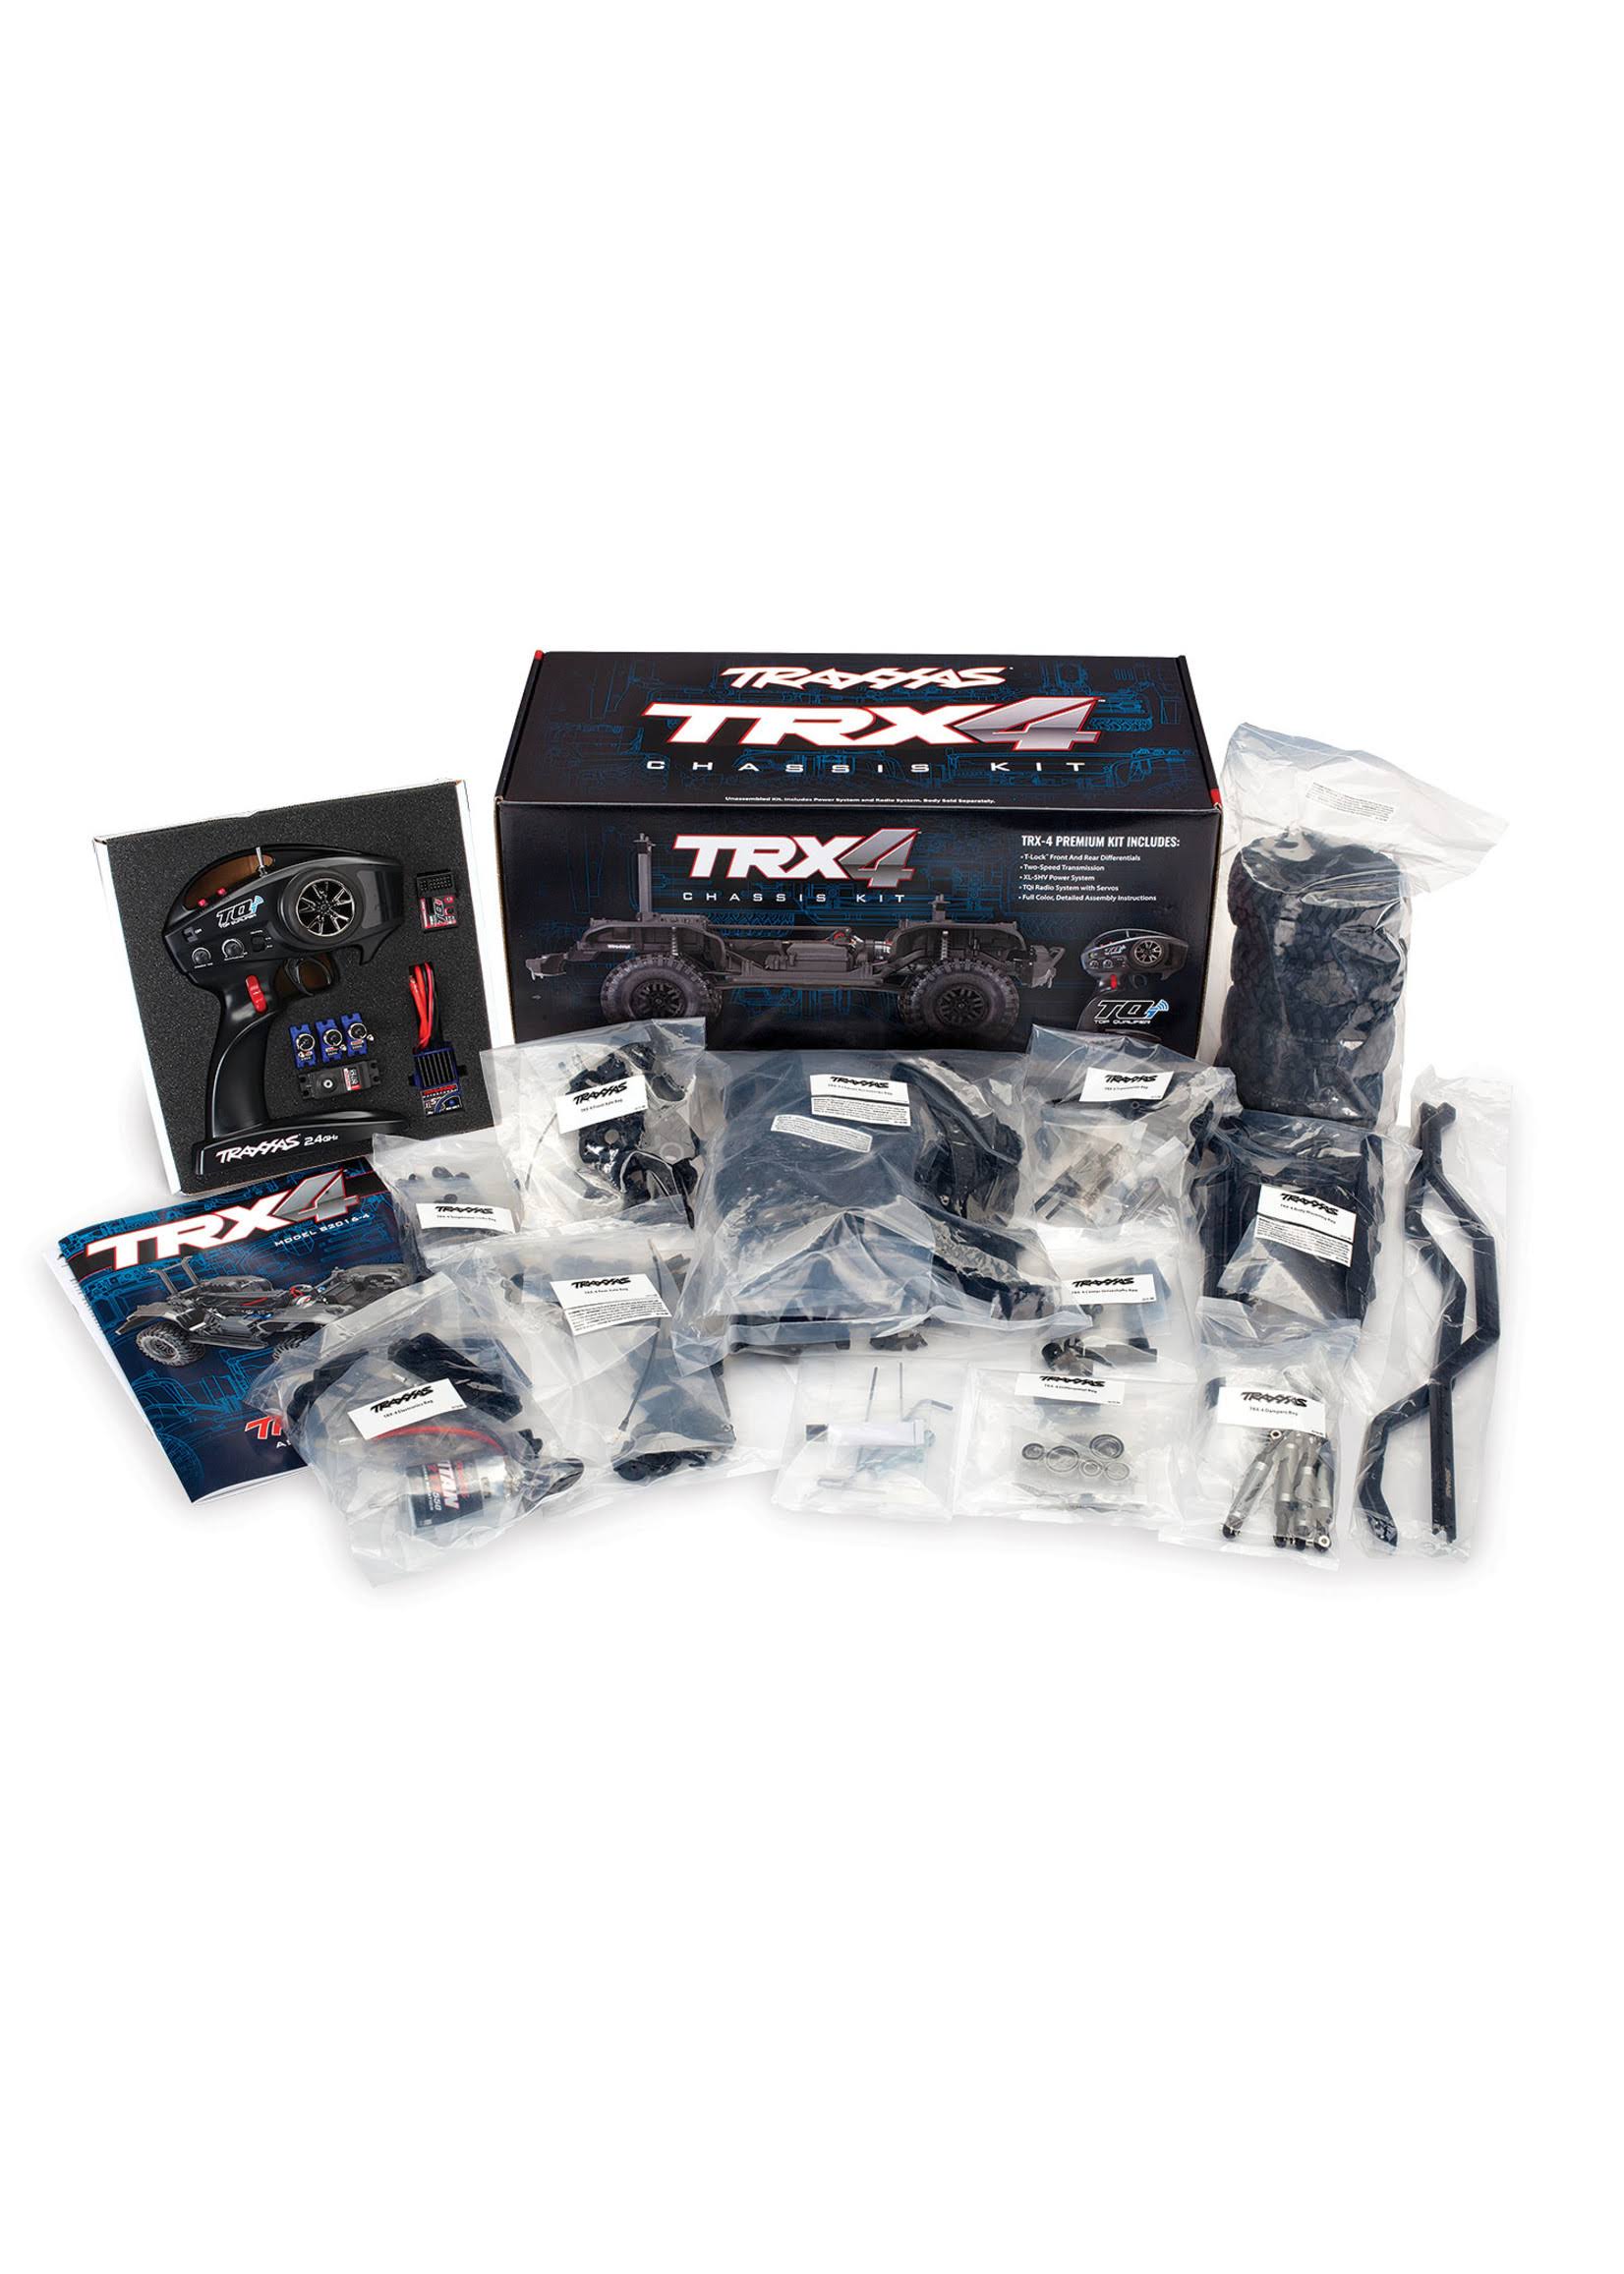 Traxxas 1/10 TRX-4 Crawler Chassis Kit